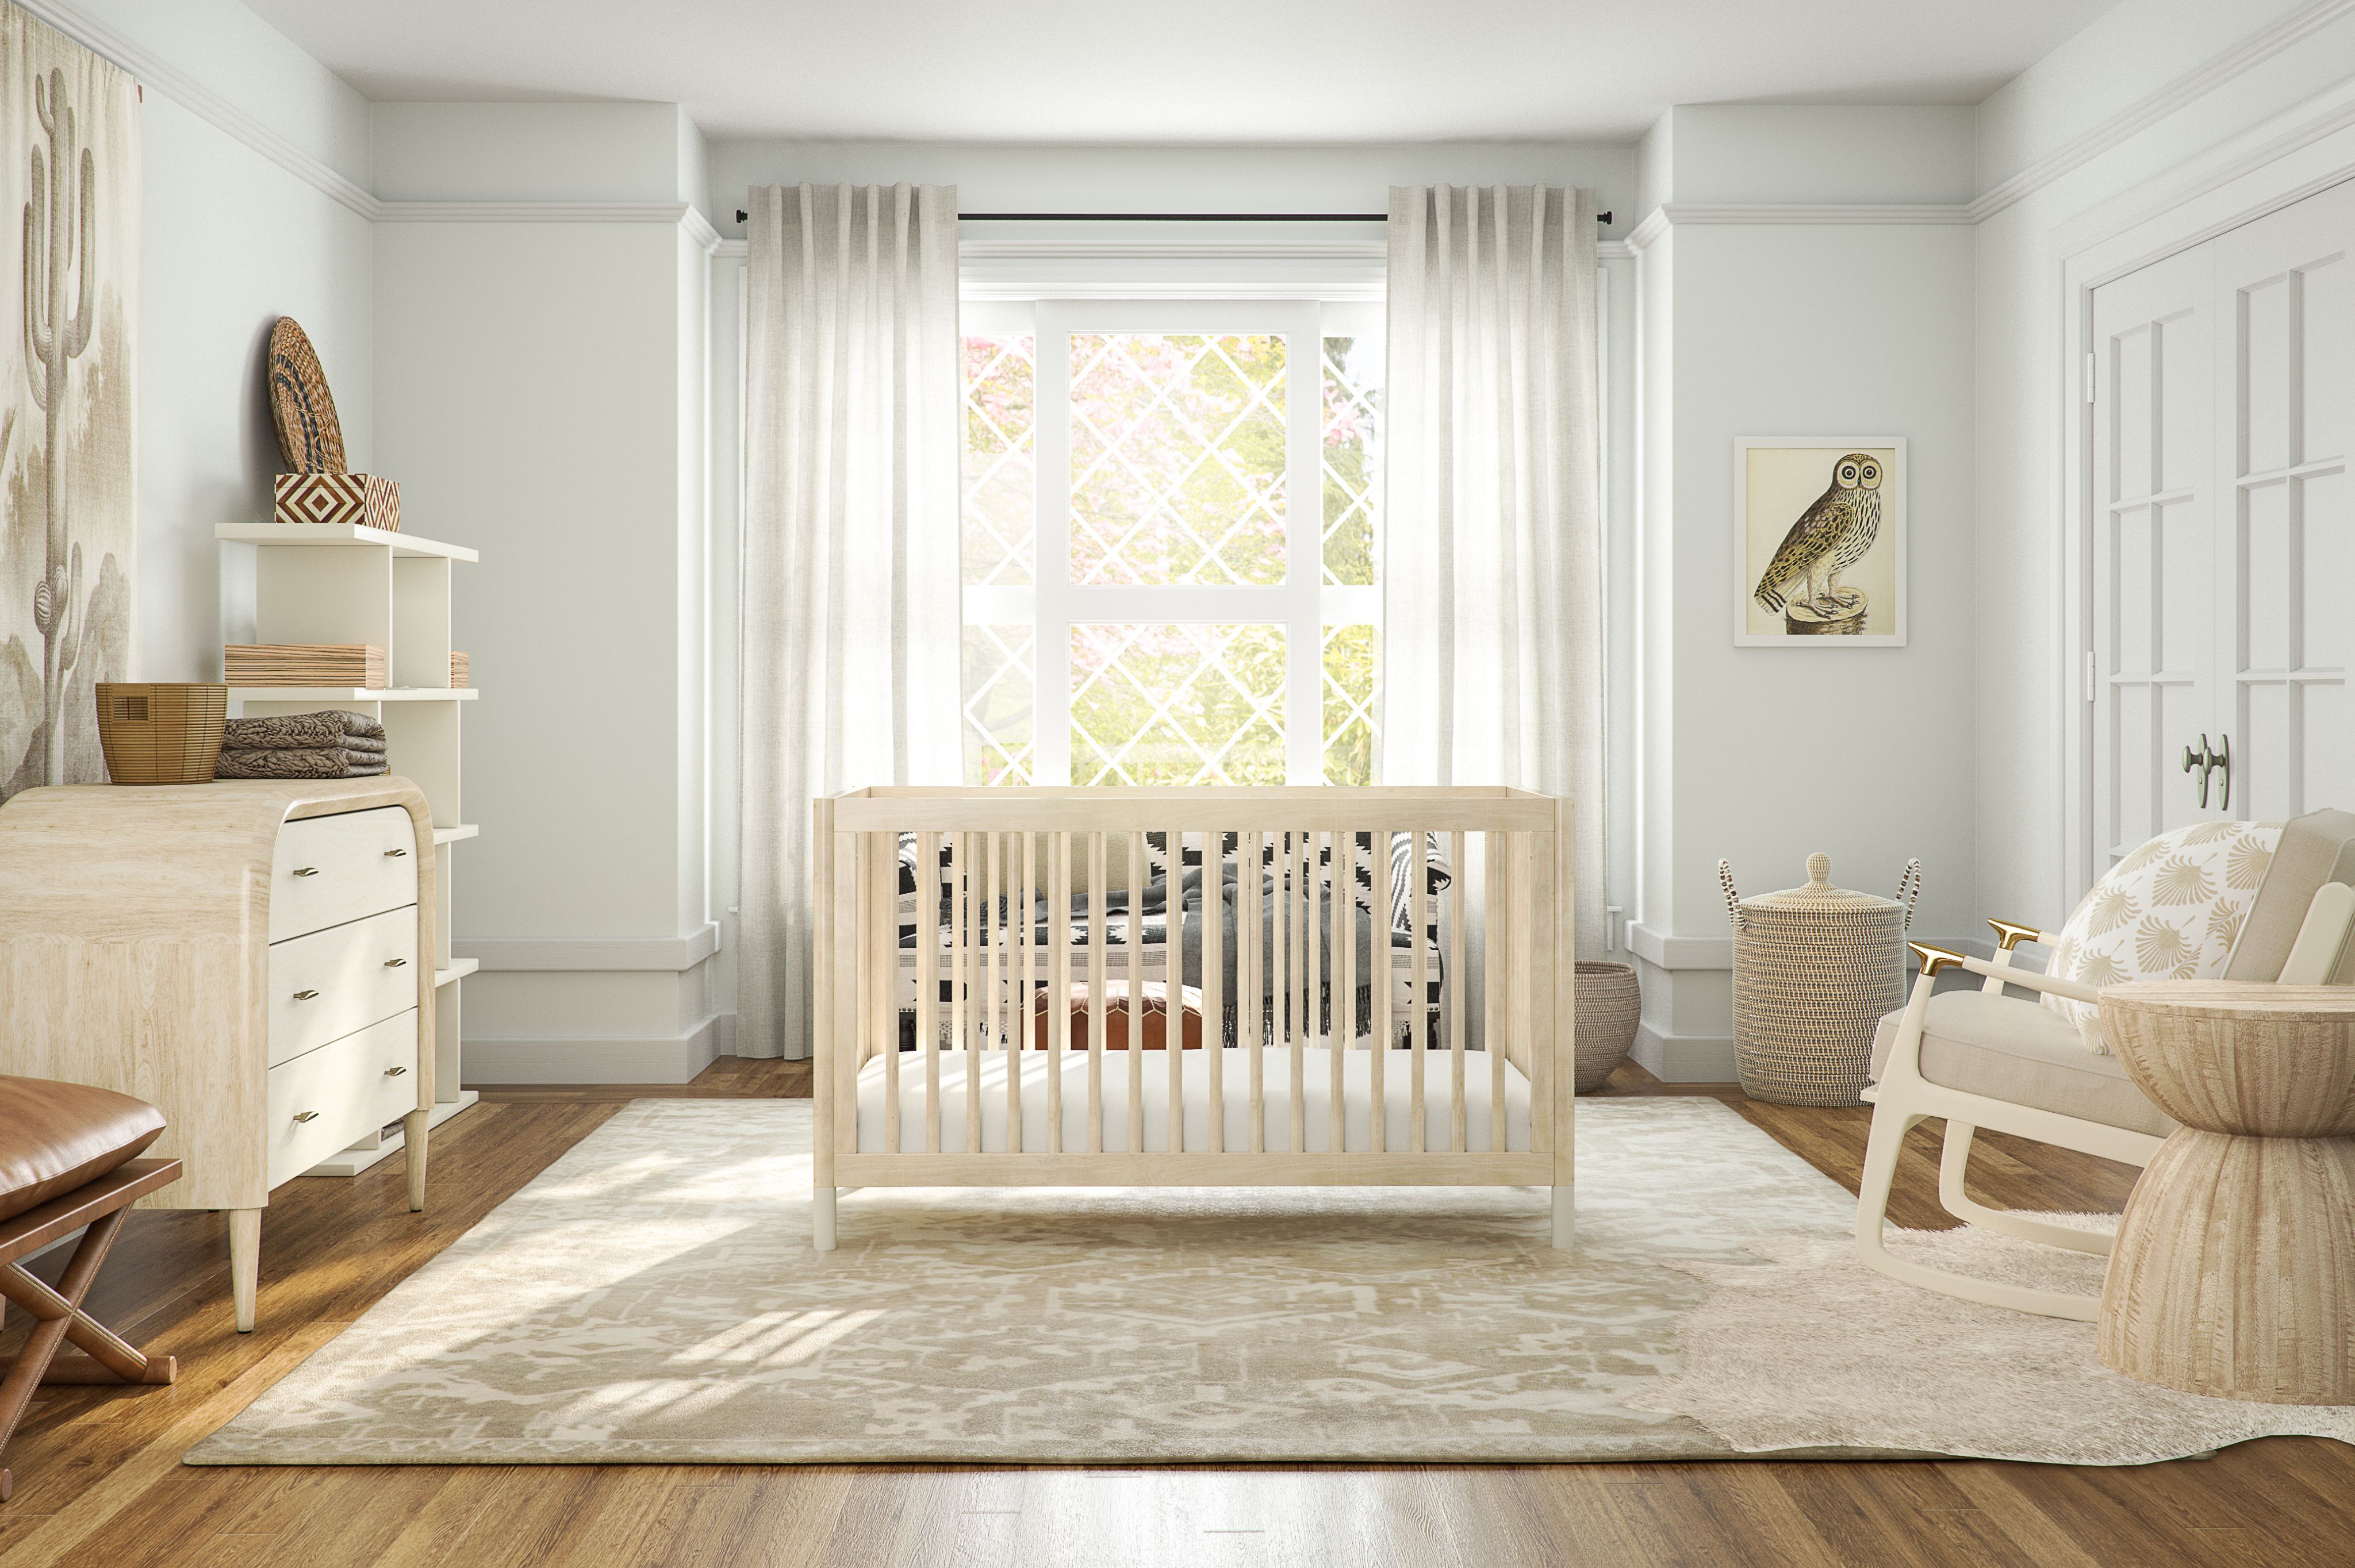 Белая классическая мебель для младенца Md318